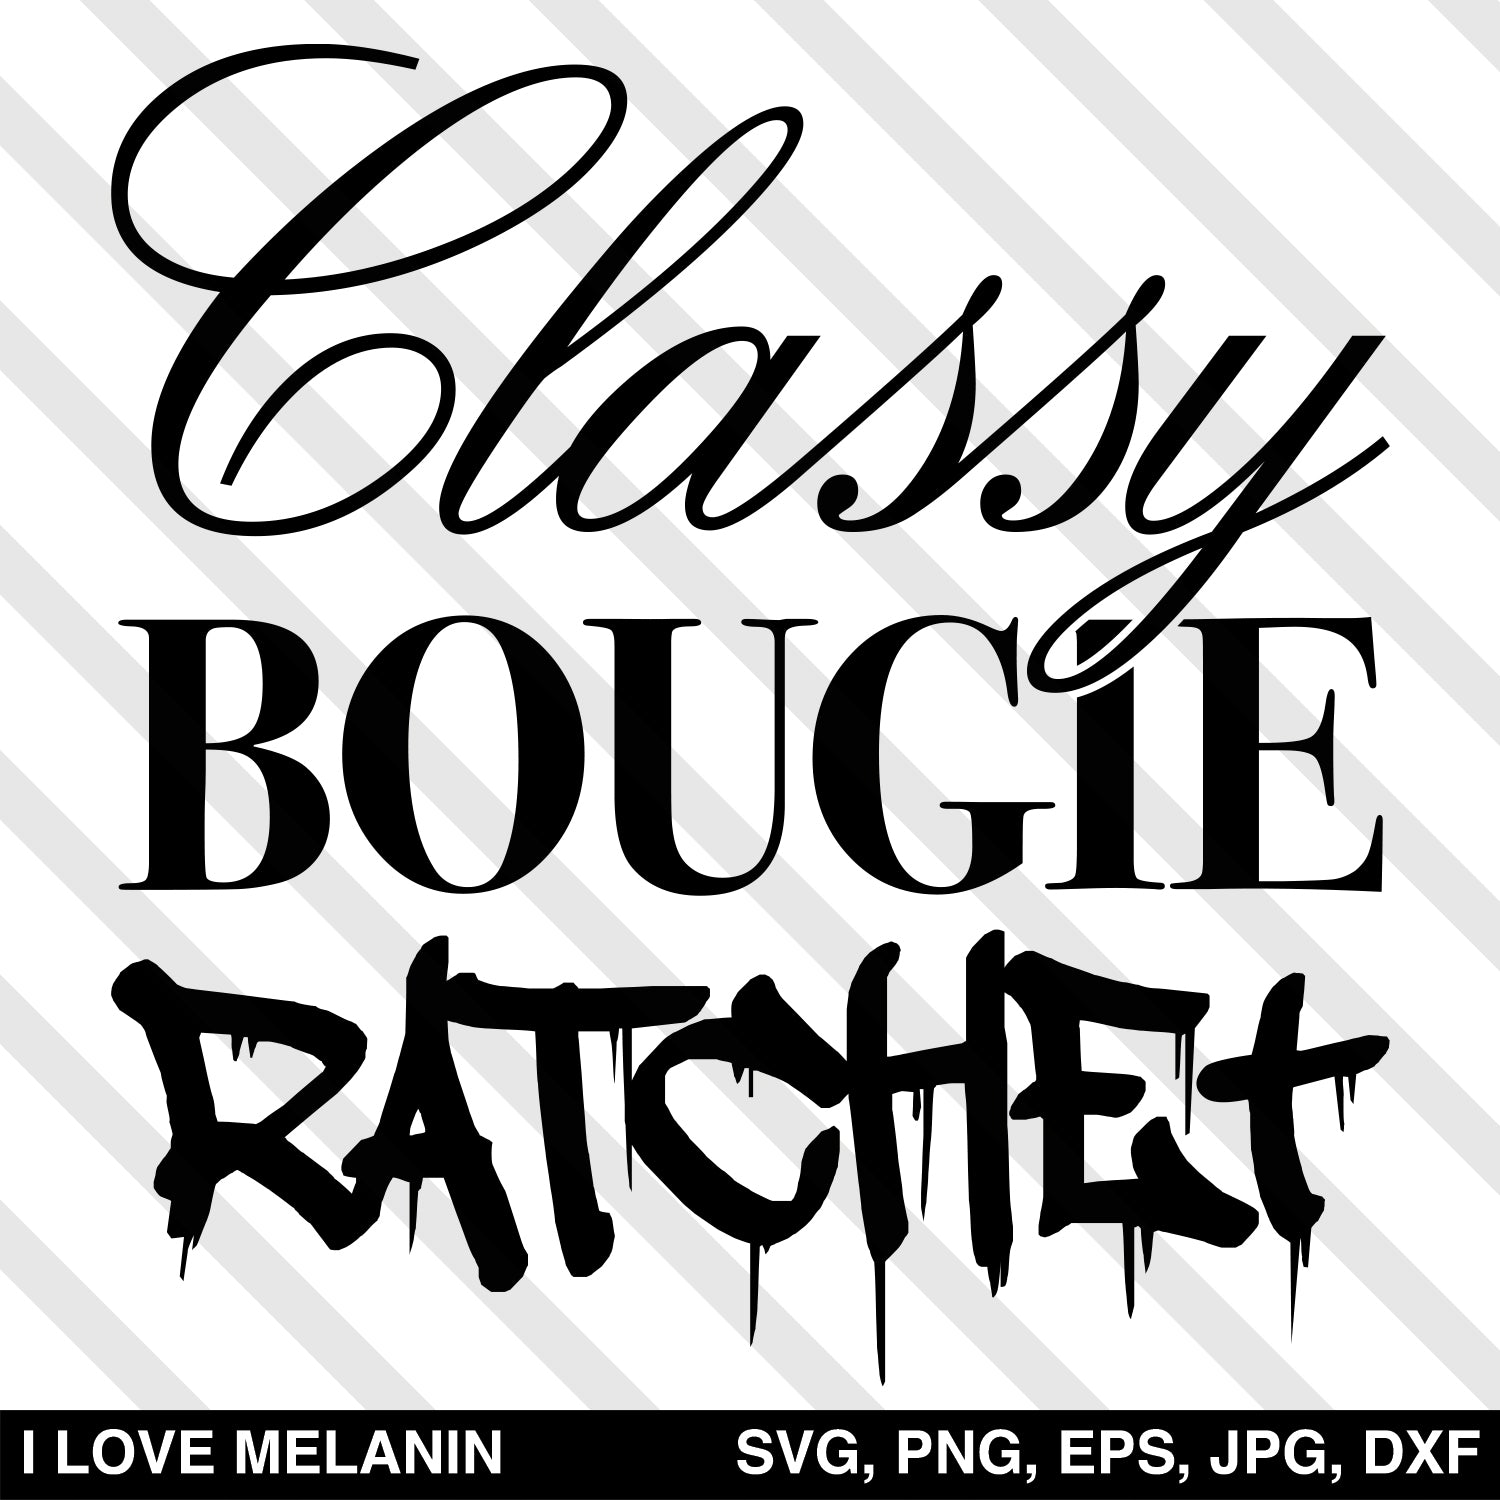 Classy Bougie Ratchet SVG